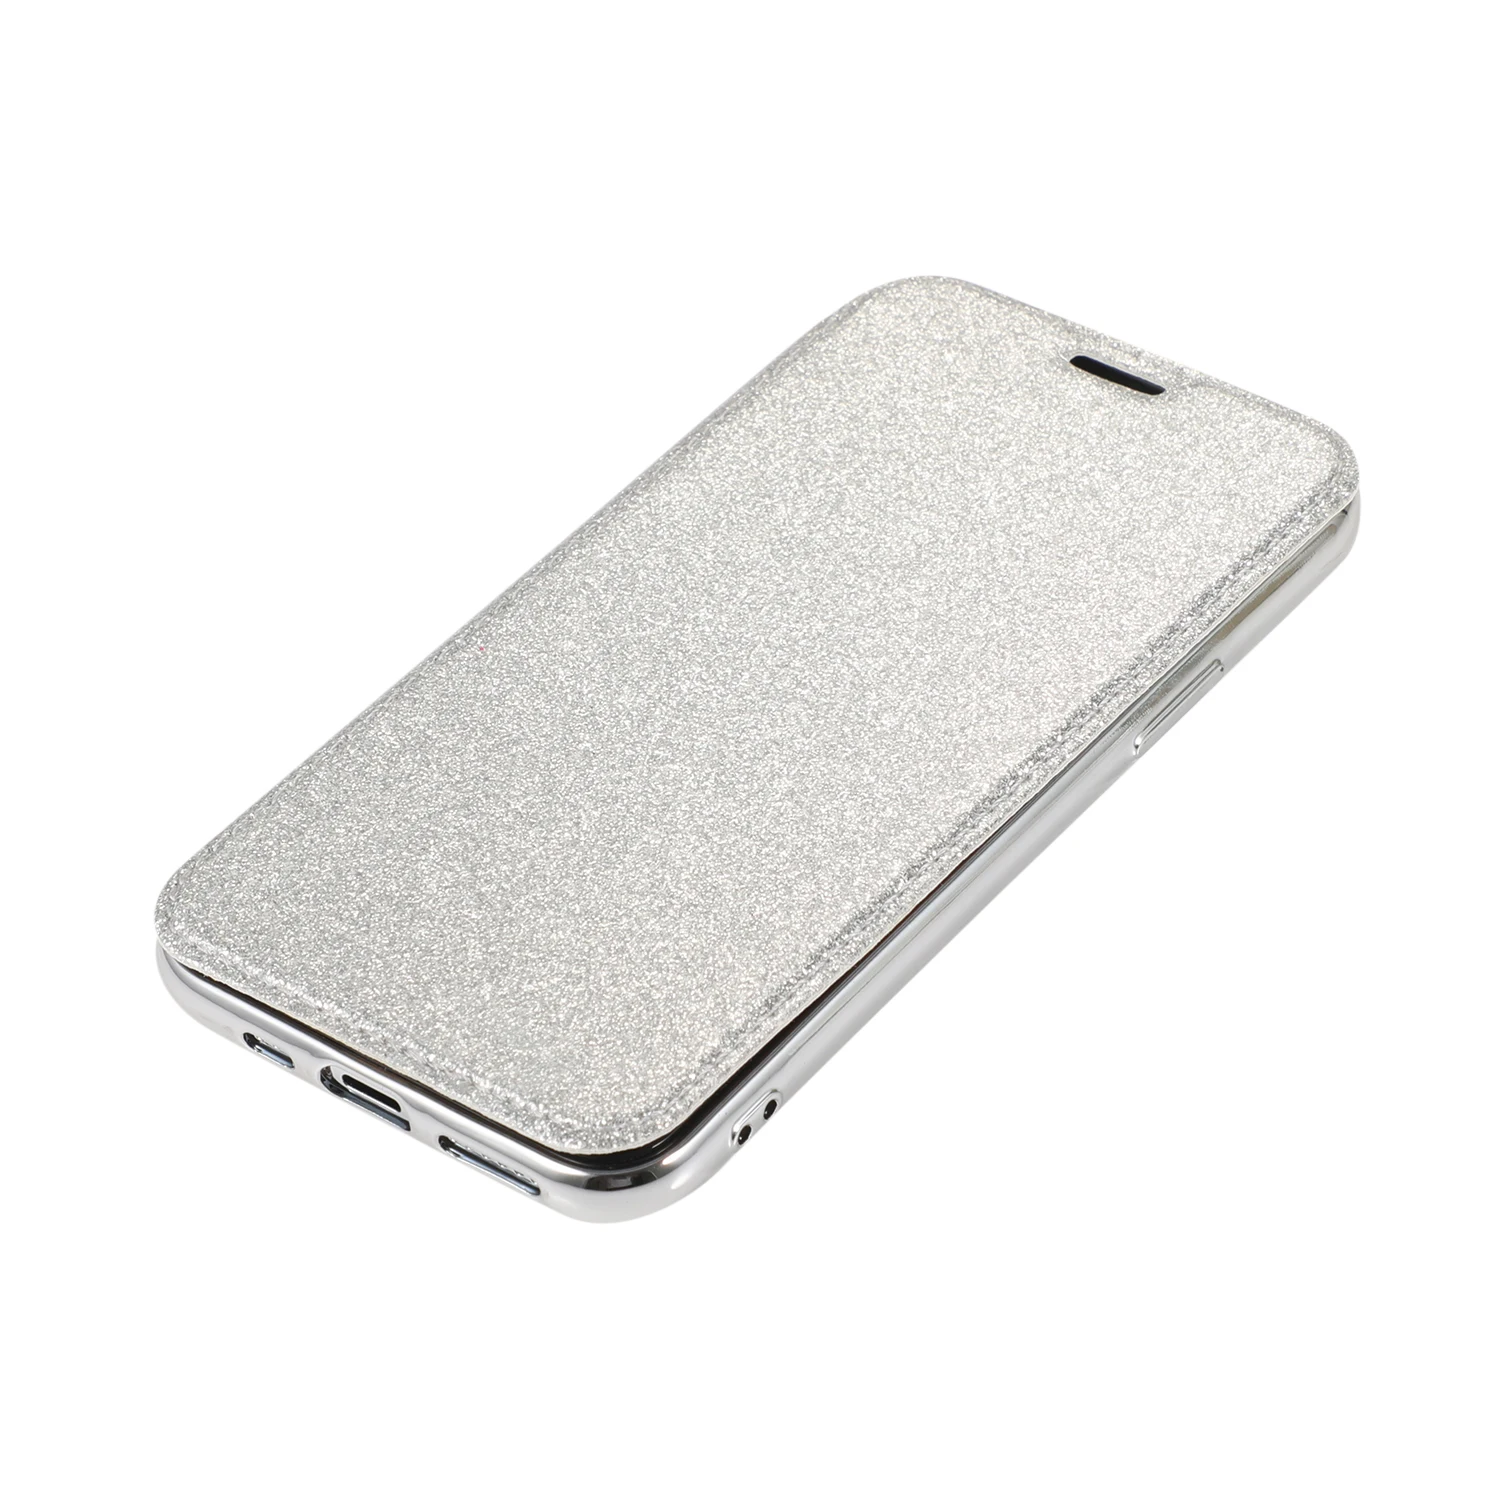 Чехол сверкающий с блестками для iPhone 11 Pro Max кожаный флип прозрачная задняя тонкая подставка чехол-кошелек для iPhone XS MAX XR 6 6s 7 8 Plus Capa